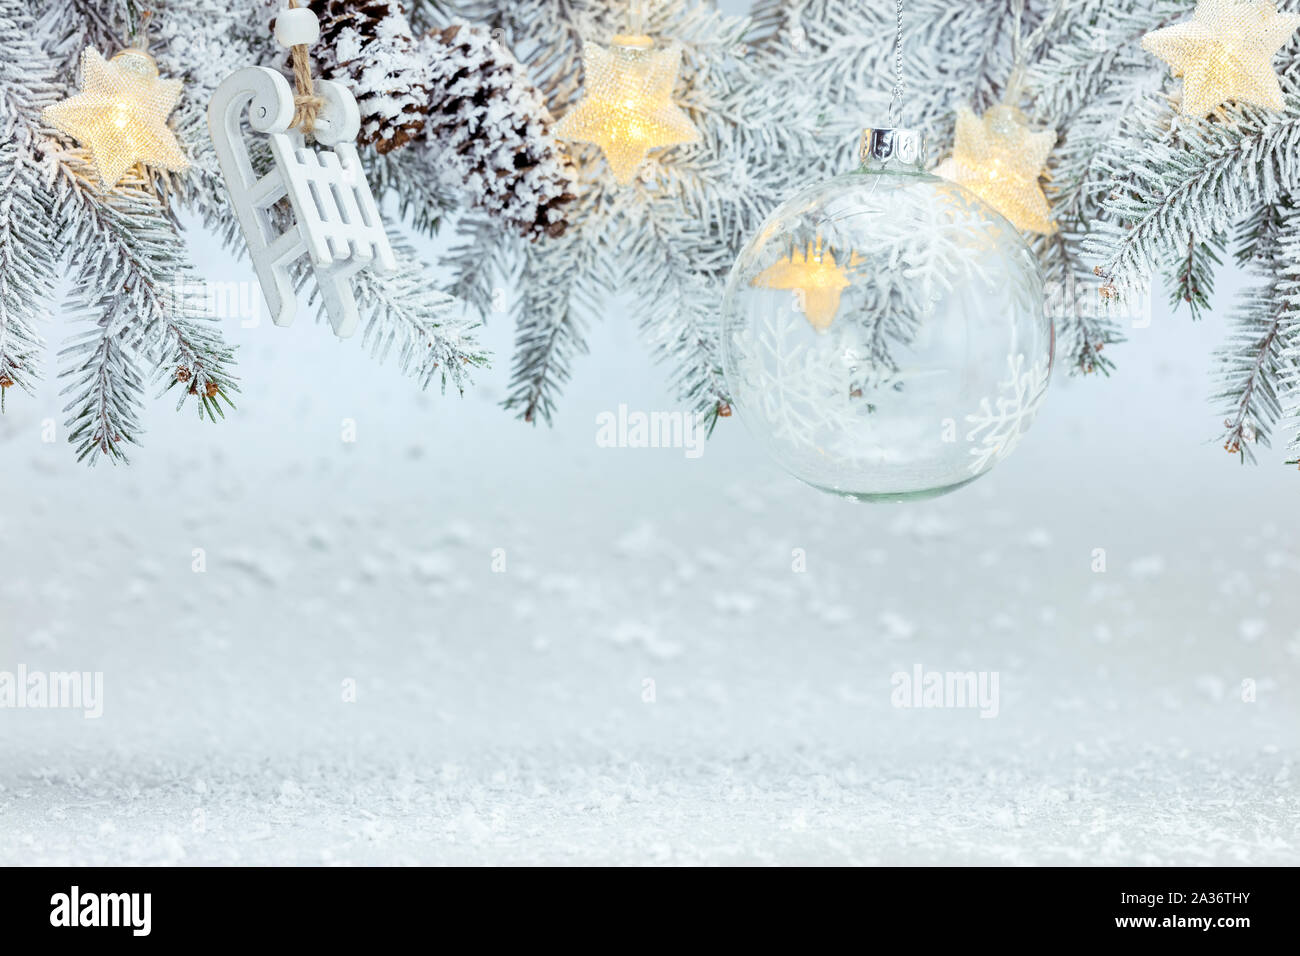 Winter Hintergrund mit schneebedeckten Tannenbaum Zweig mit Glaskugel dekoriert, Holz- schlitten, Sterne leuchten Girlanden Stockfoto